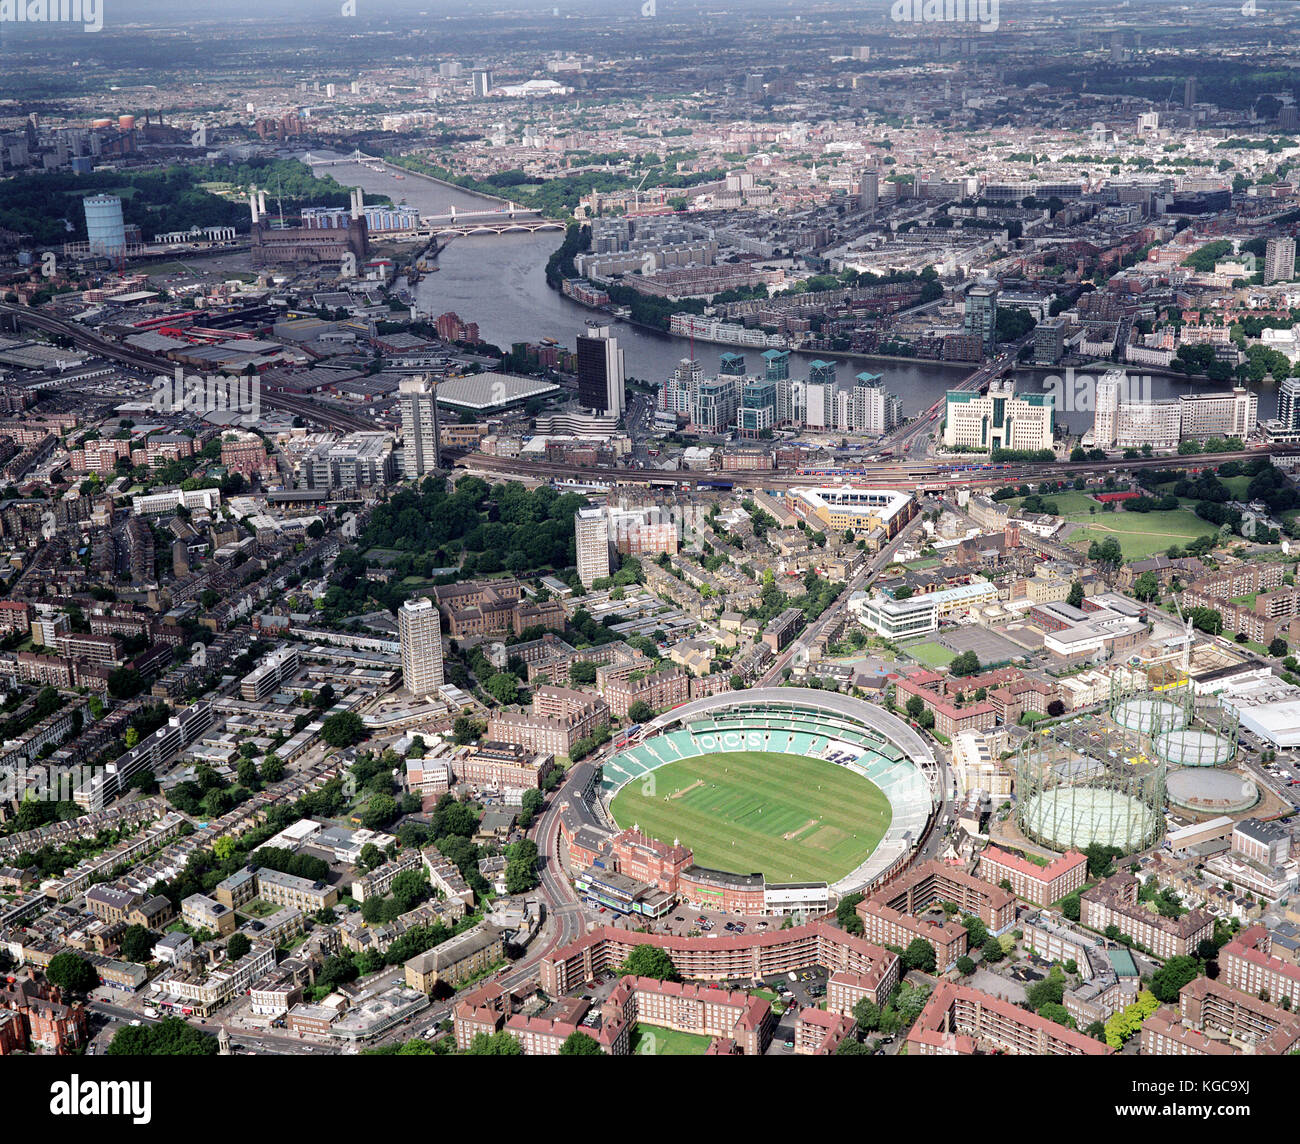 Una veduta aerea di Londra che mostra il fiume Tamigi, l'Oval Cricket Ground, Battersea Power Station, MI6 Edificio e Vauxhall Cross. Foto di Michael Foto Stock